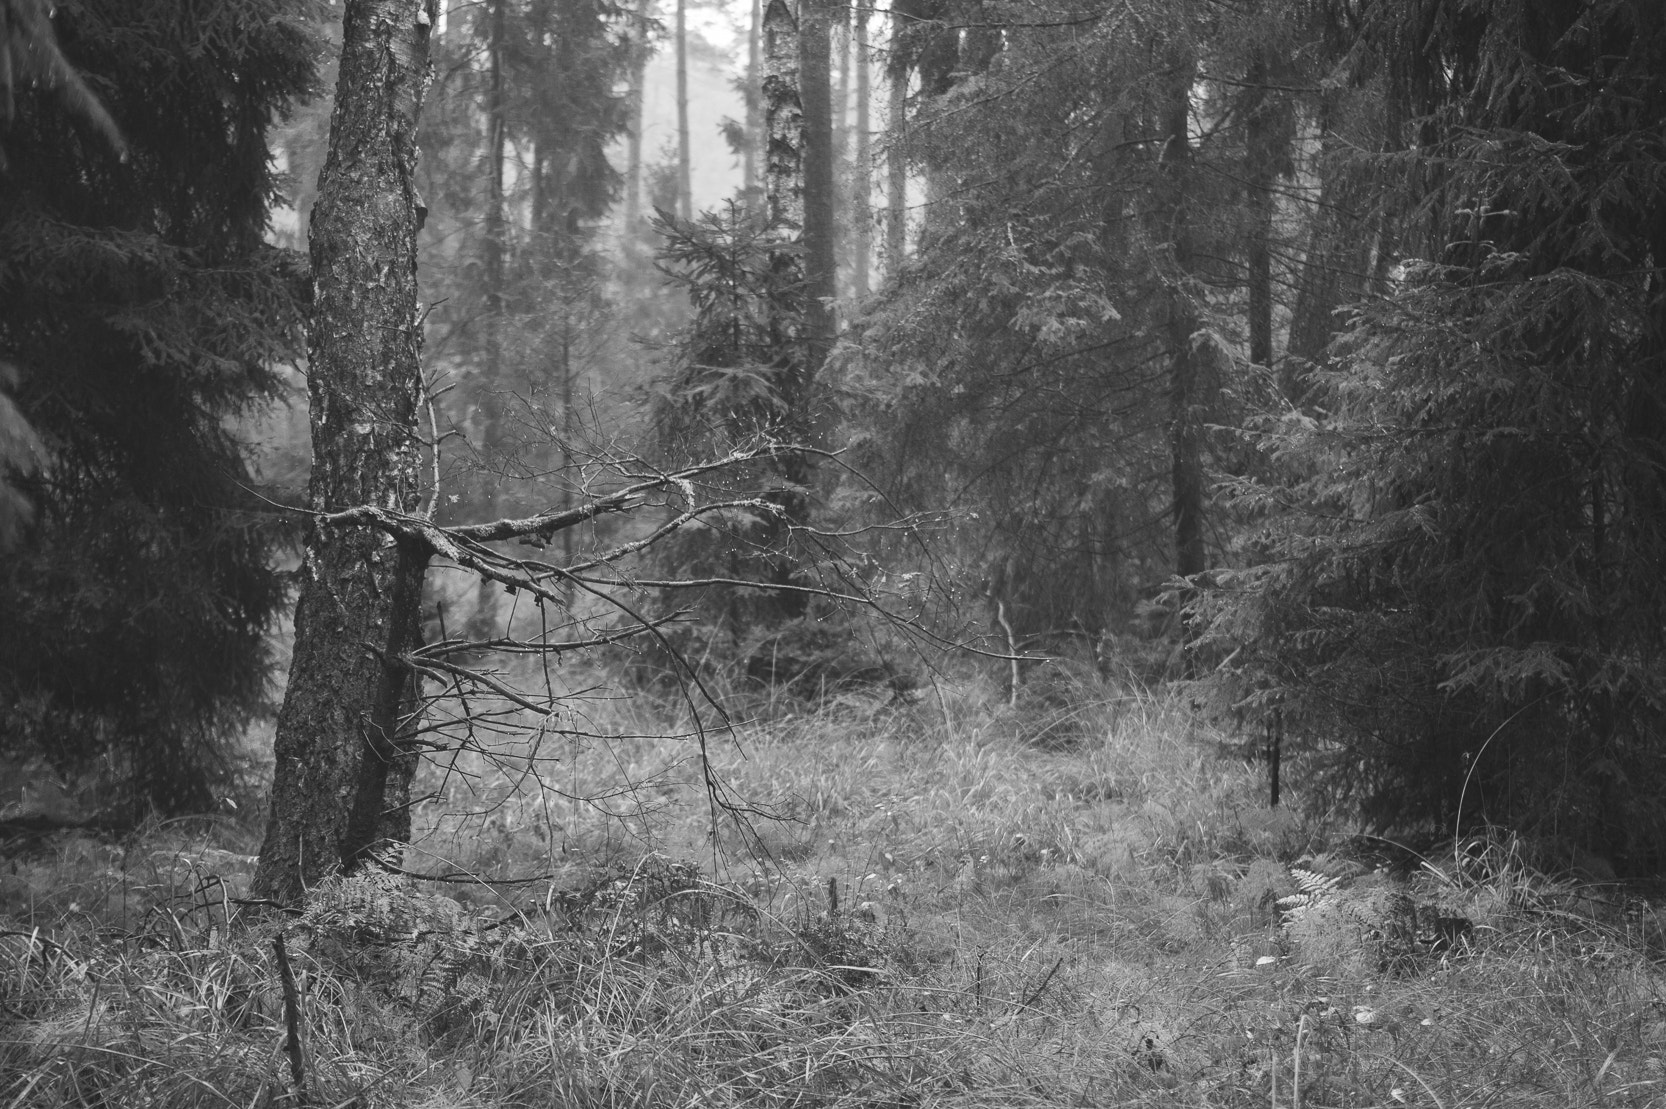 AF Zoom-Nikkor 35-105mm f/3.5-4.5 sample photo. Forest b&w photography